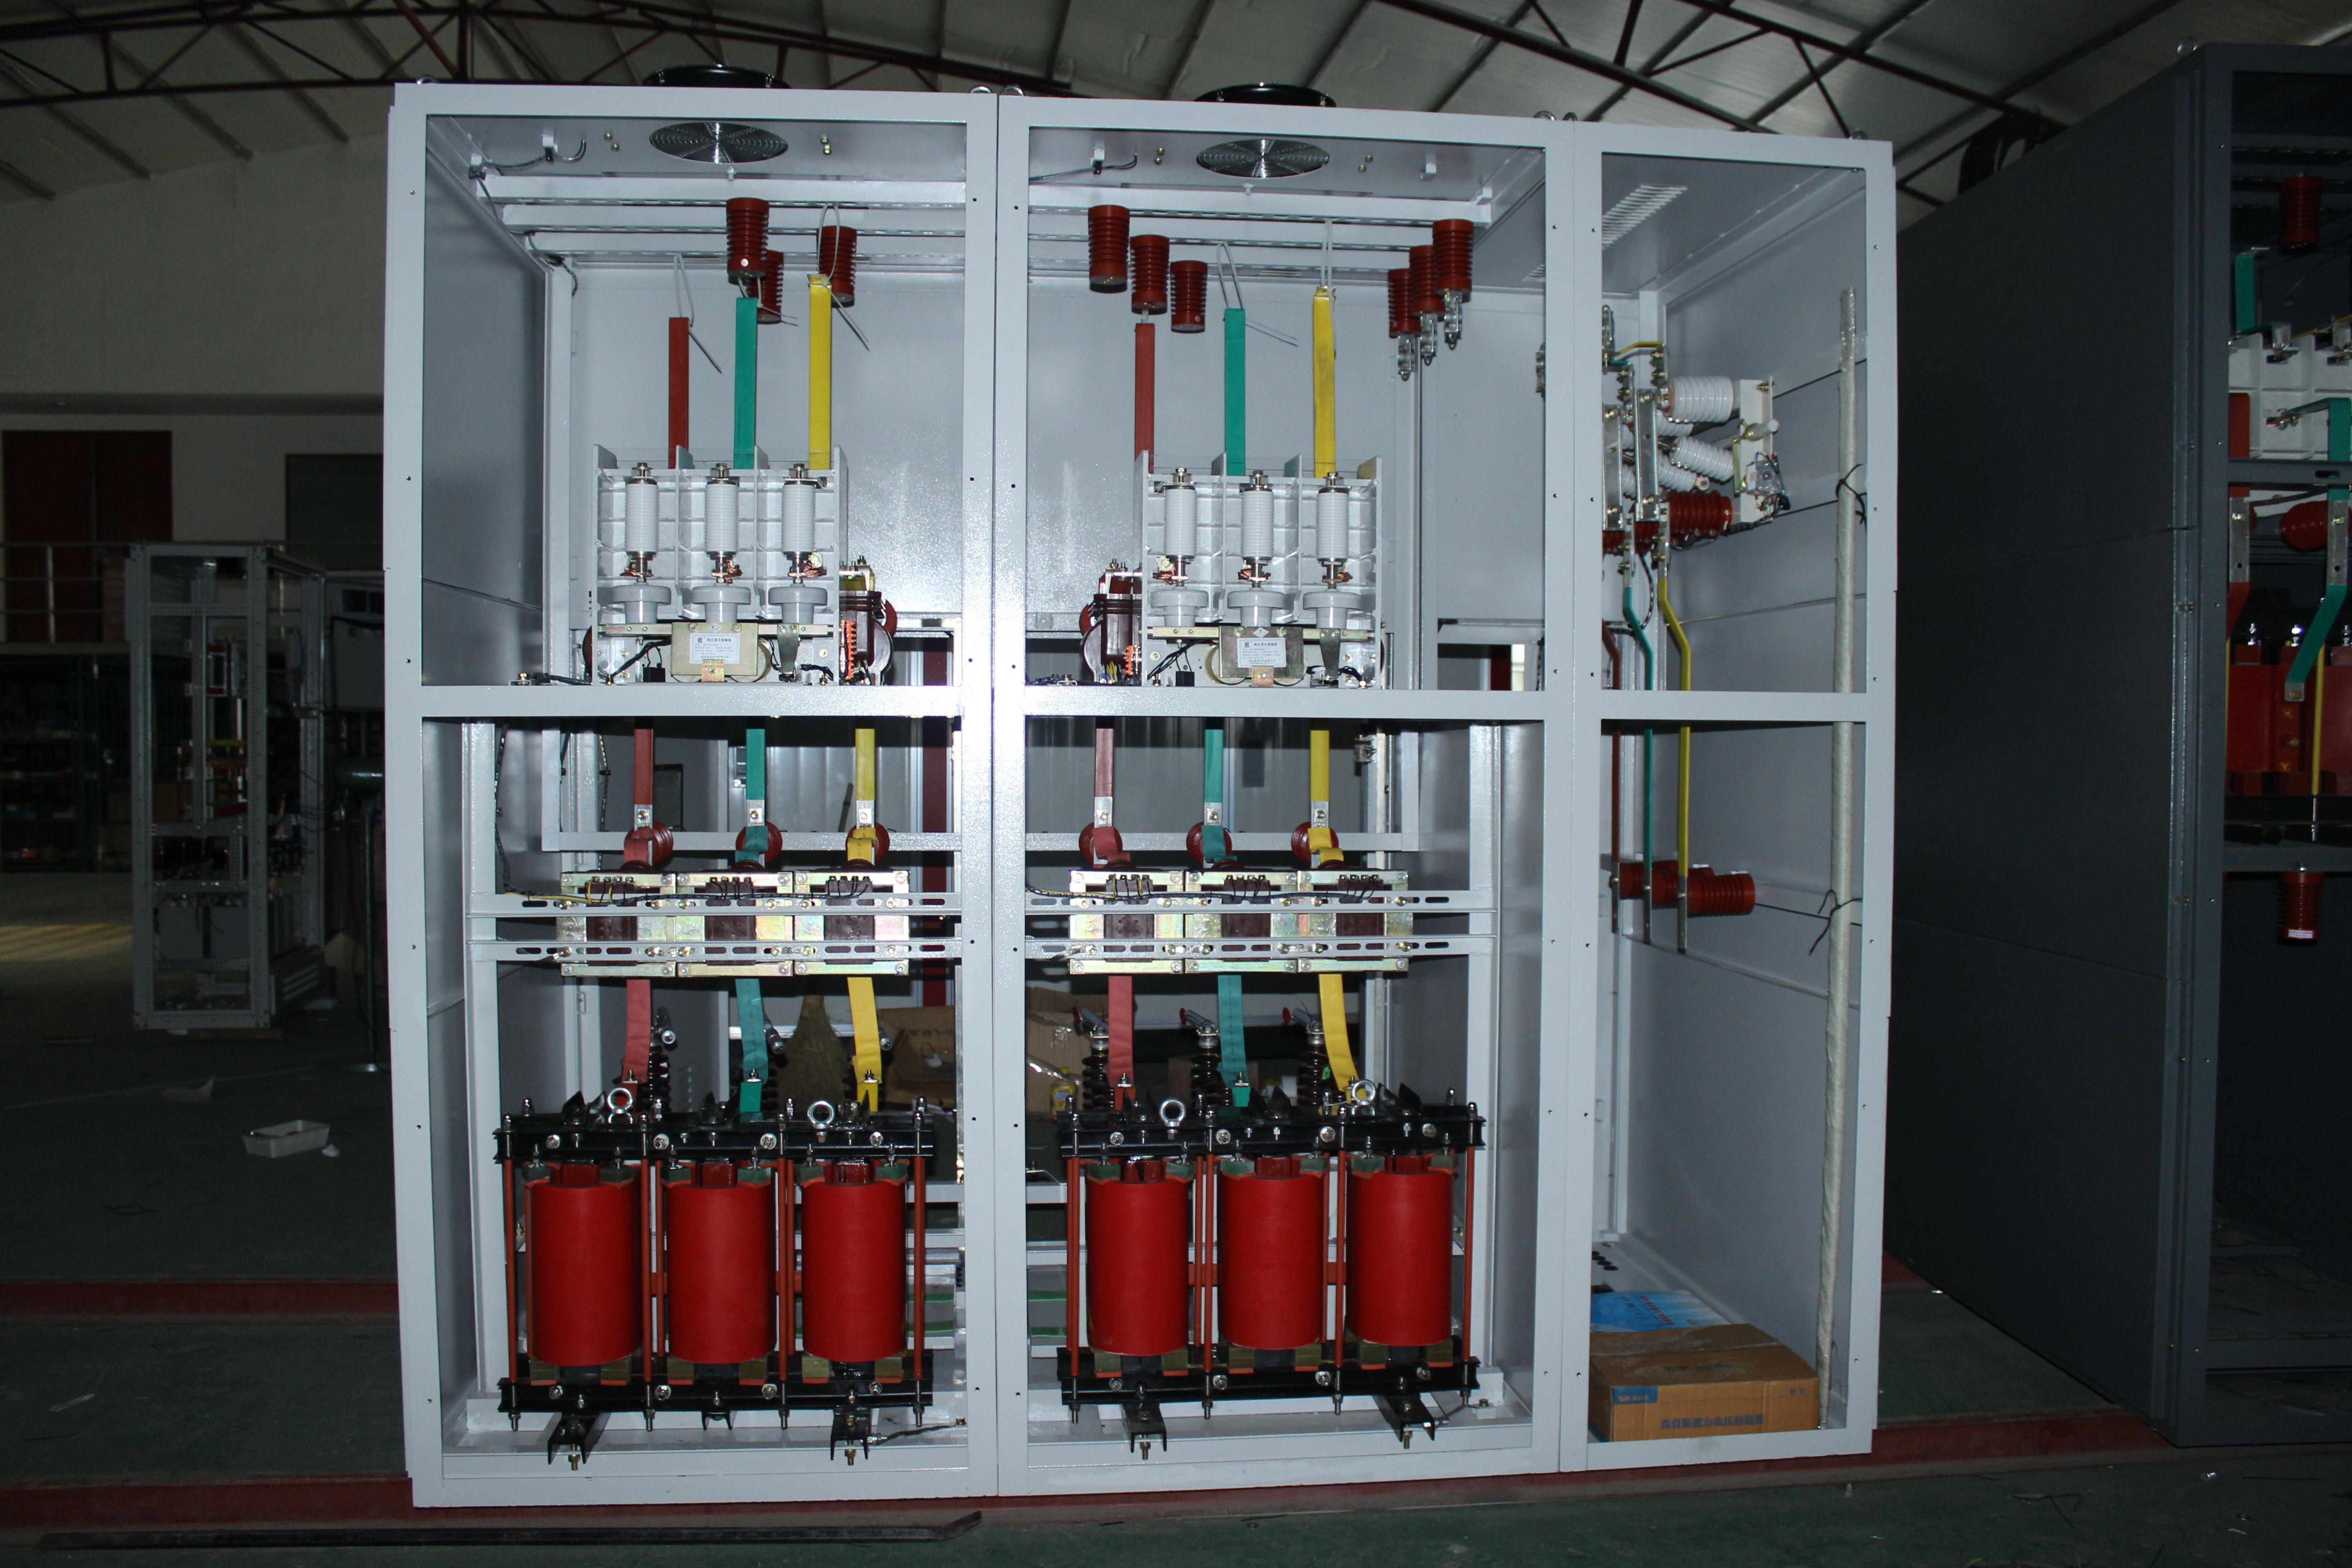 敷铝锌板高压电容补偿柜TBB10组装式电容器成套